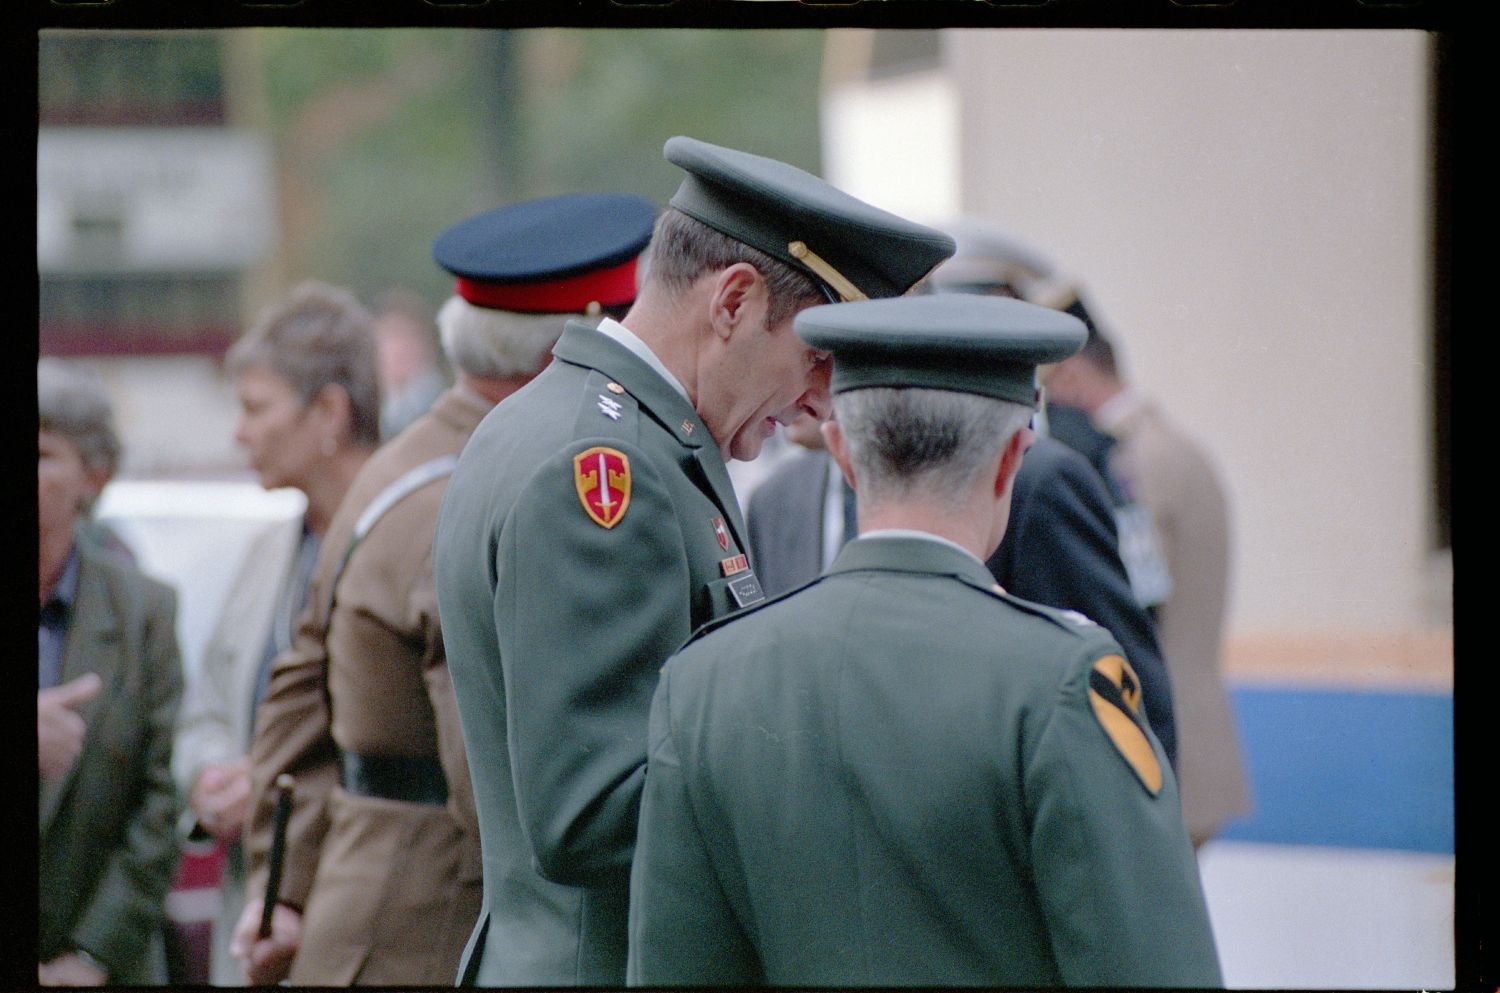 Fotografie: Feierliche Übergabe des Alliierten Kontrollhäuschens vom Checkpoint Charlie an das Deutsche Historische Museum in Berlin